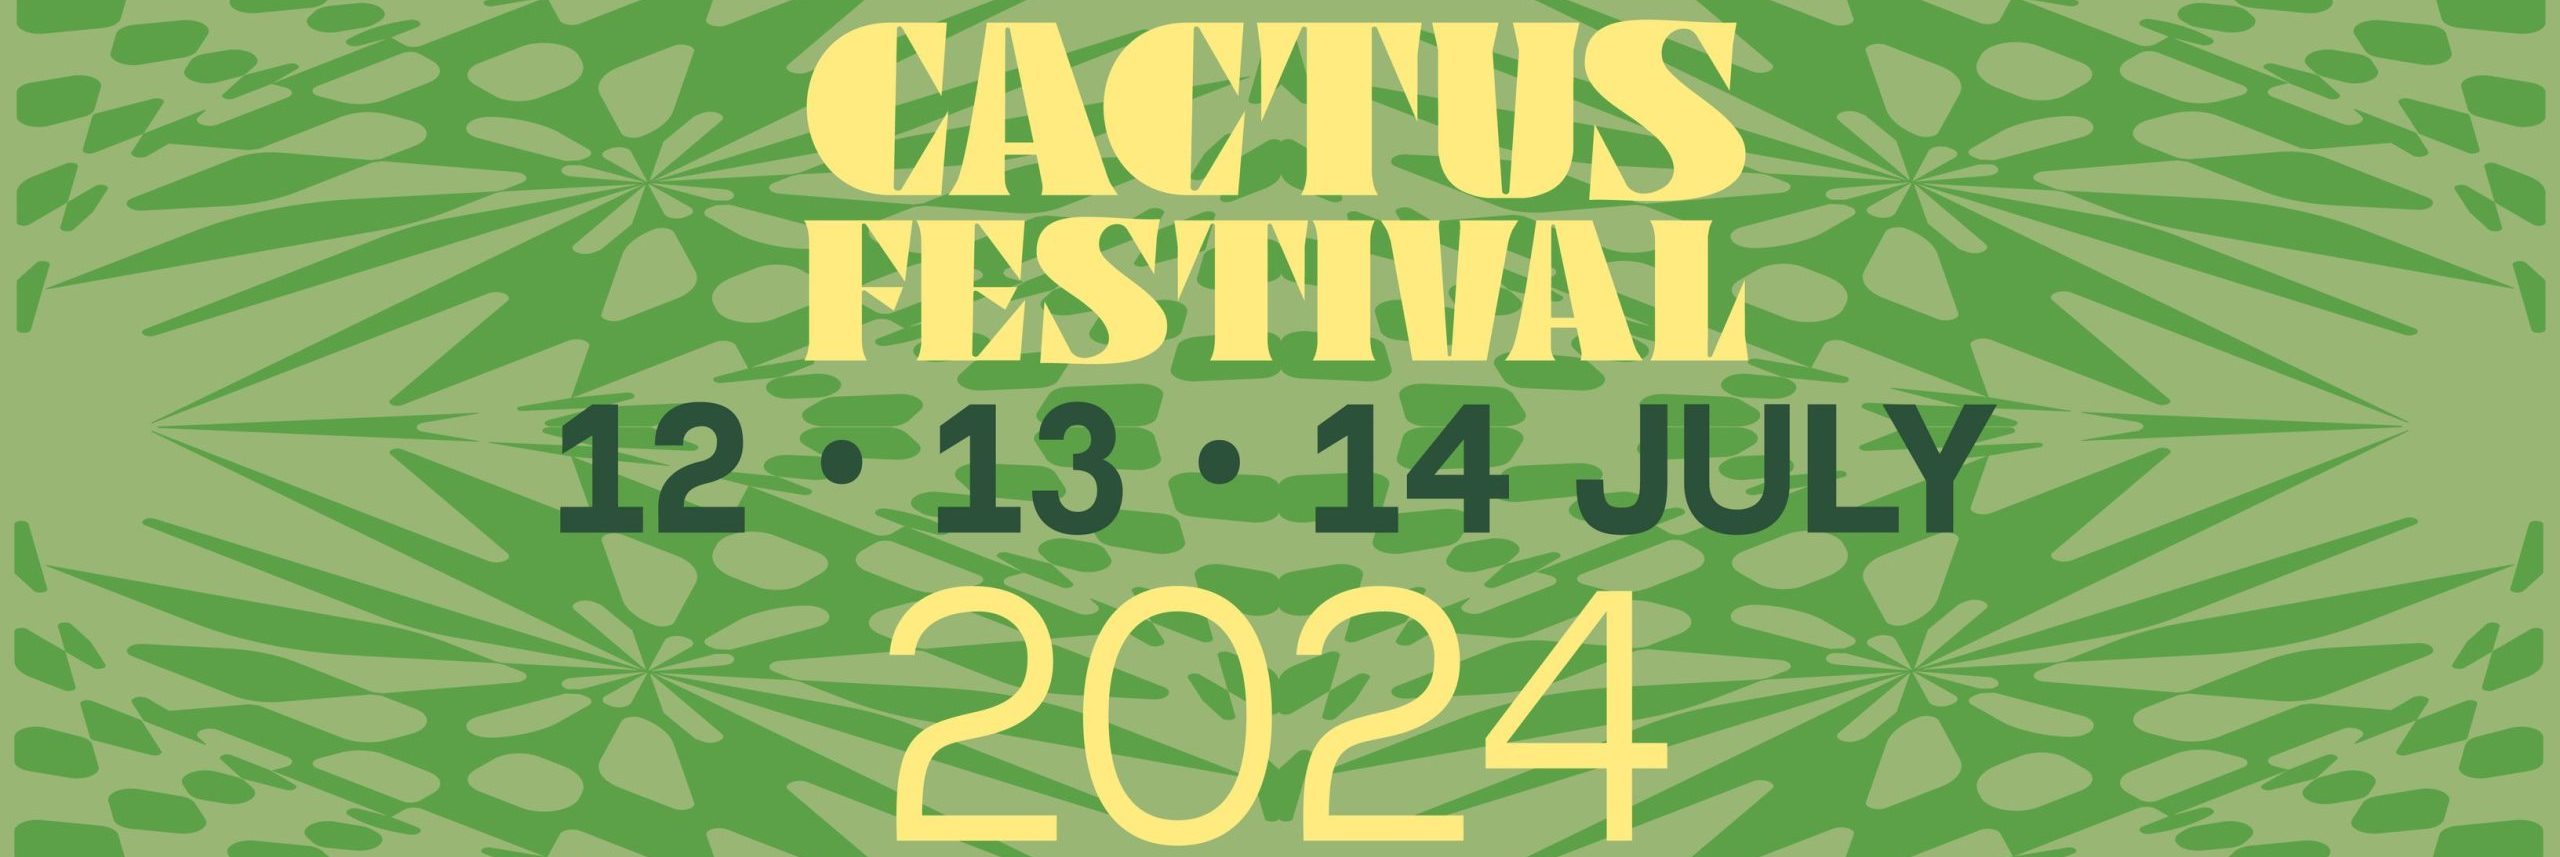 Cactusfestival 2024